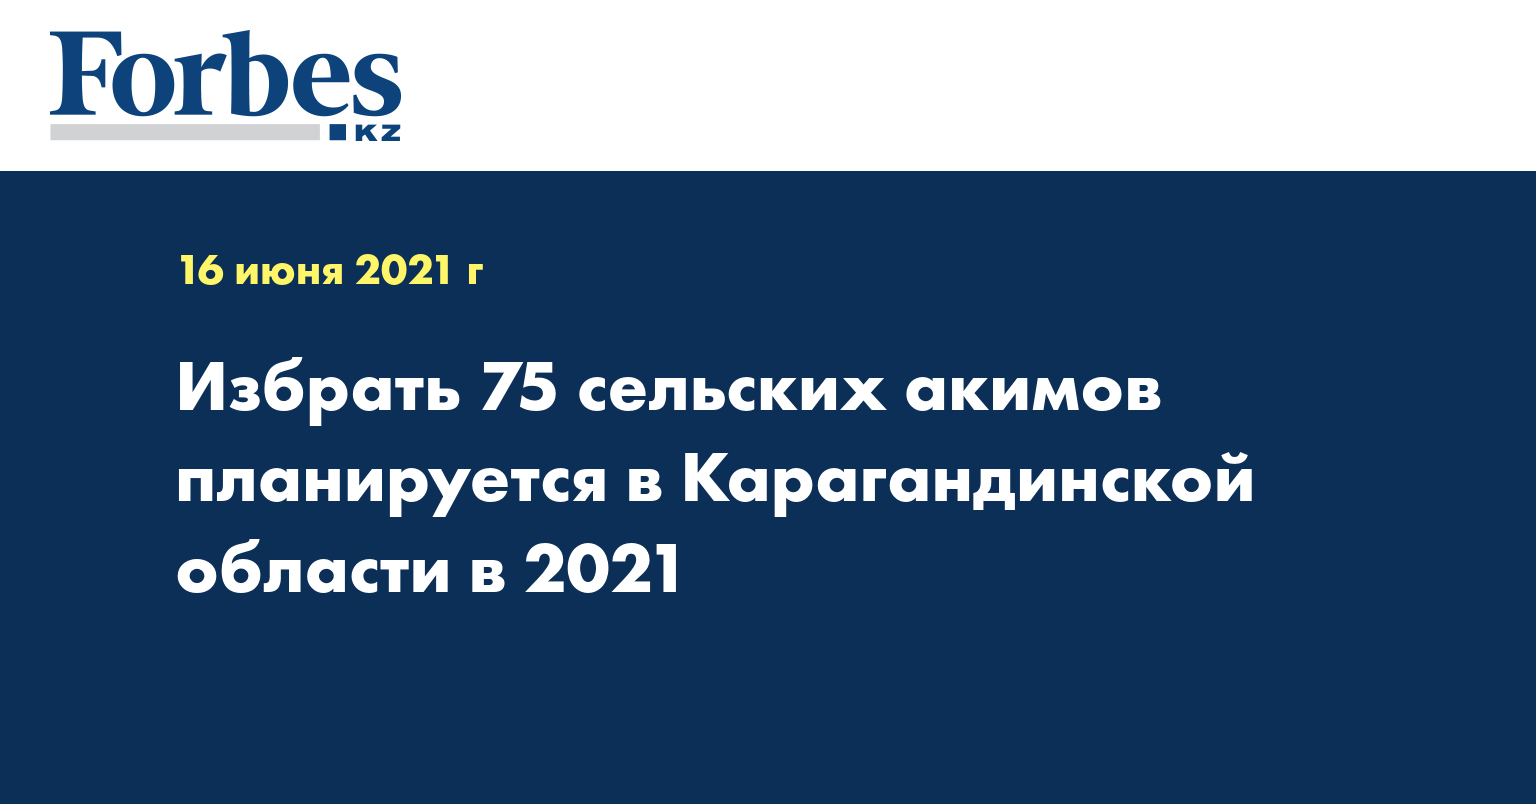 Избрать 75 сельских акимов планируется в Карагандинской области в 2021 